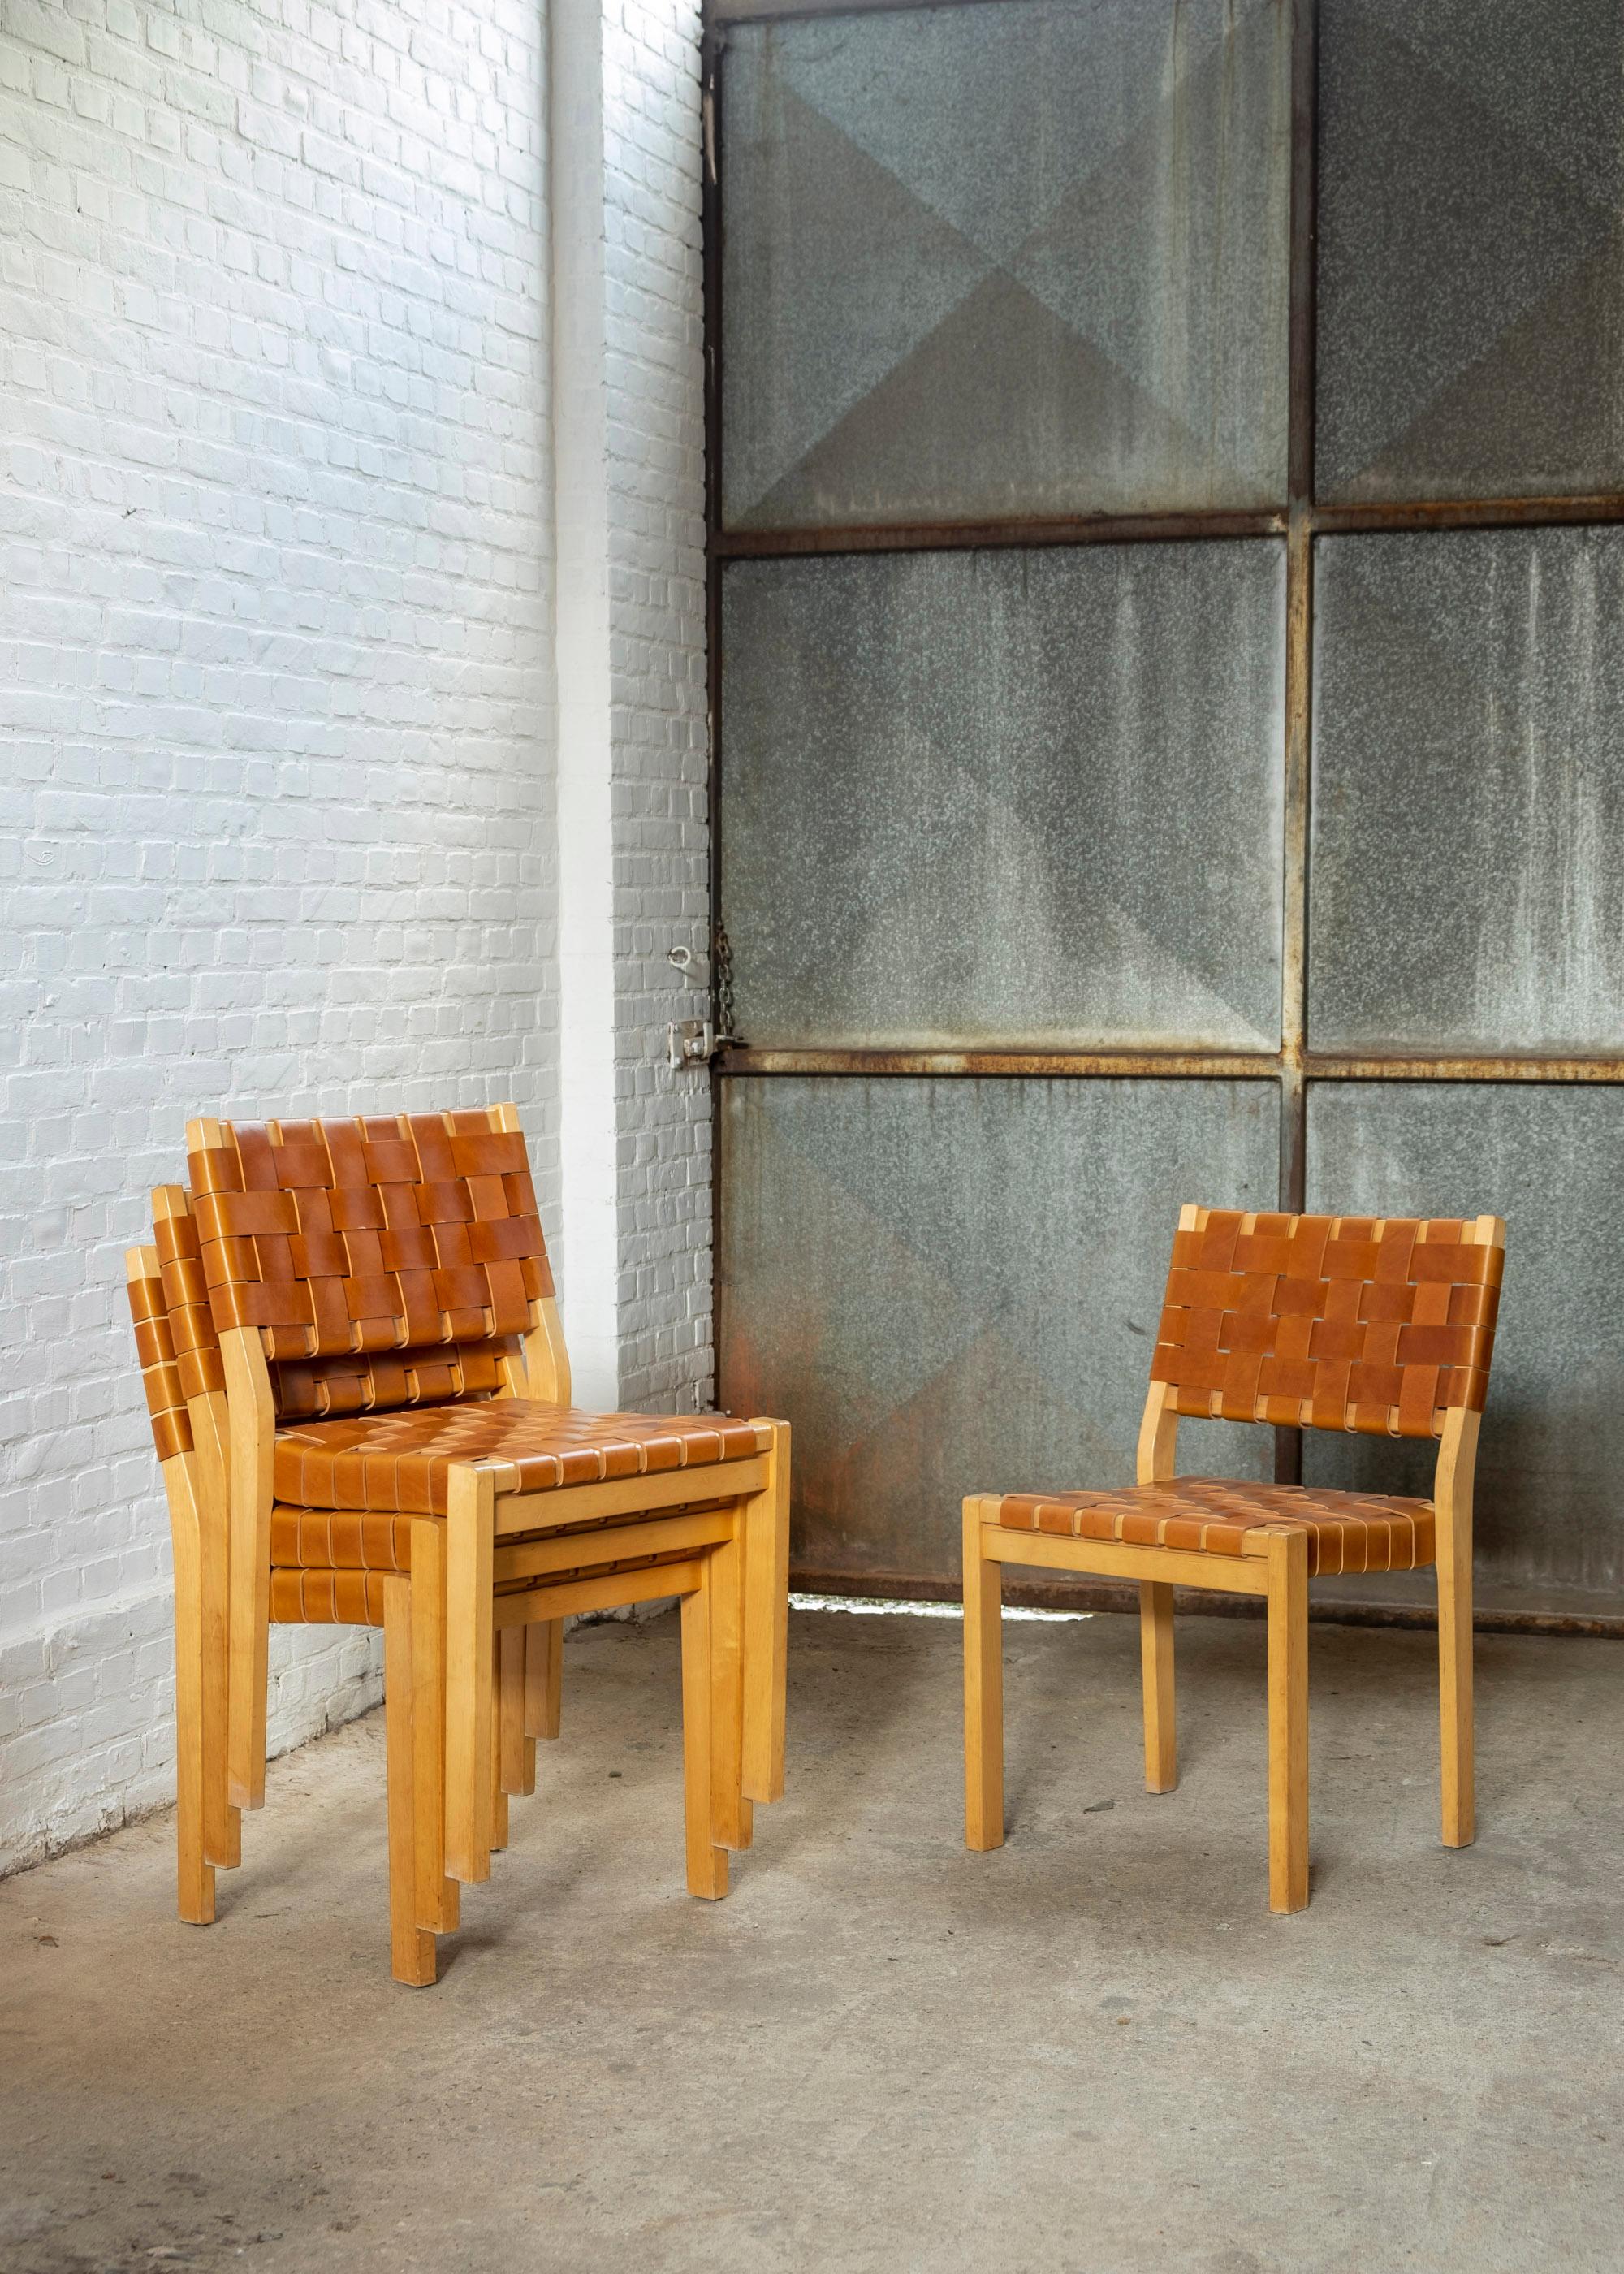 Satz von 4 Alvar Aalto Stühlen Modell 611, Birkenholzrahmen neu gepolstert mit hochwertigen Sattellederriemen in Cognacfarbe, hergestellt von Artek in den 1970er Jahren. Der Stuhl 611 wurde 1929 von Alvar Aalto entworfen und ist eines der ersten von